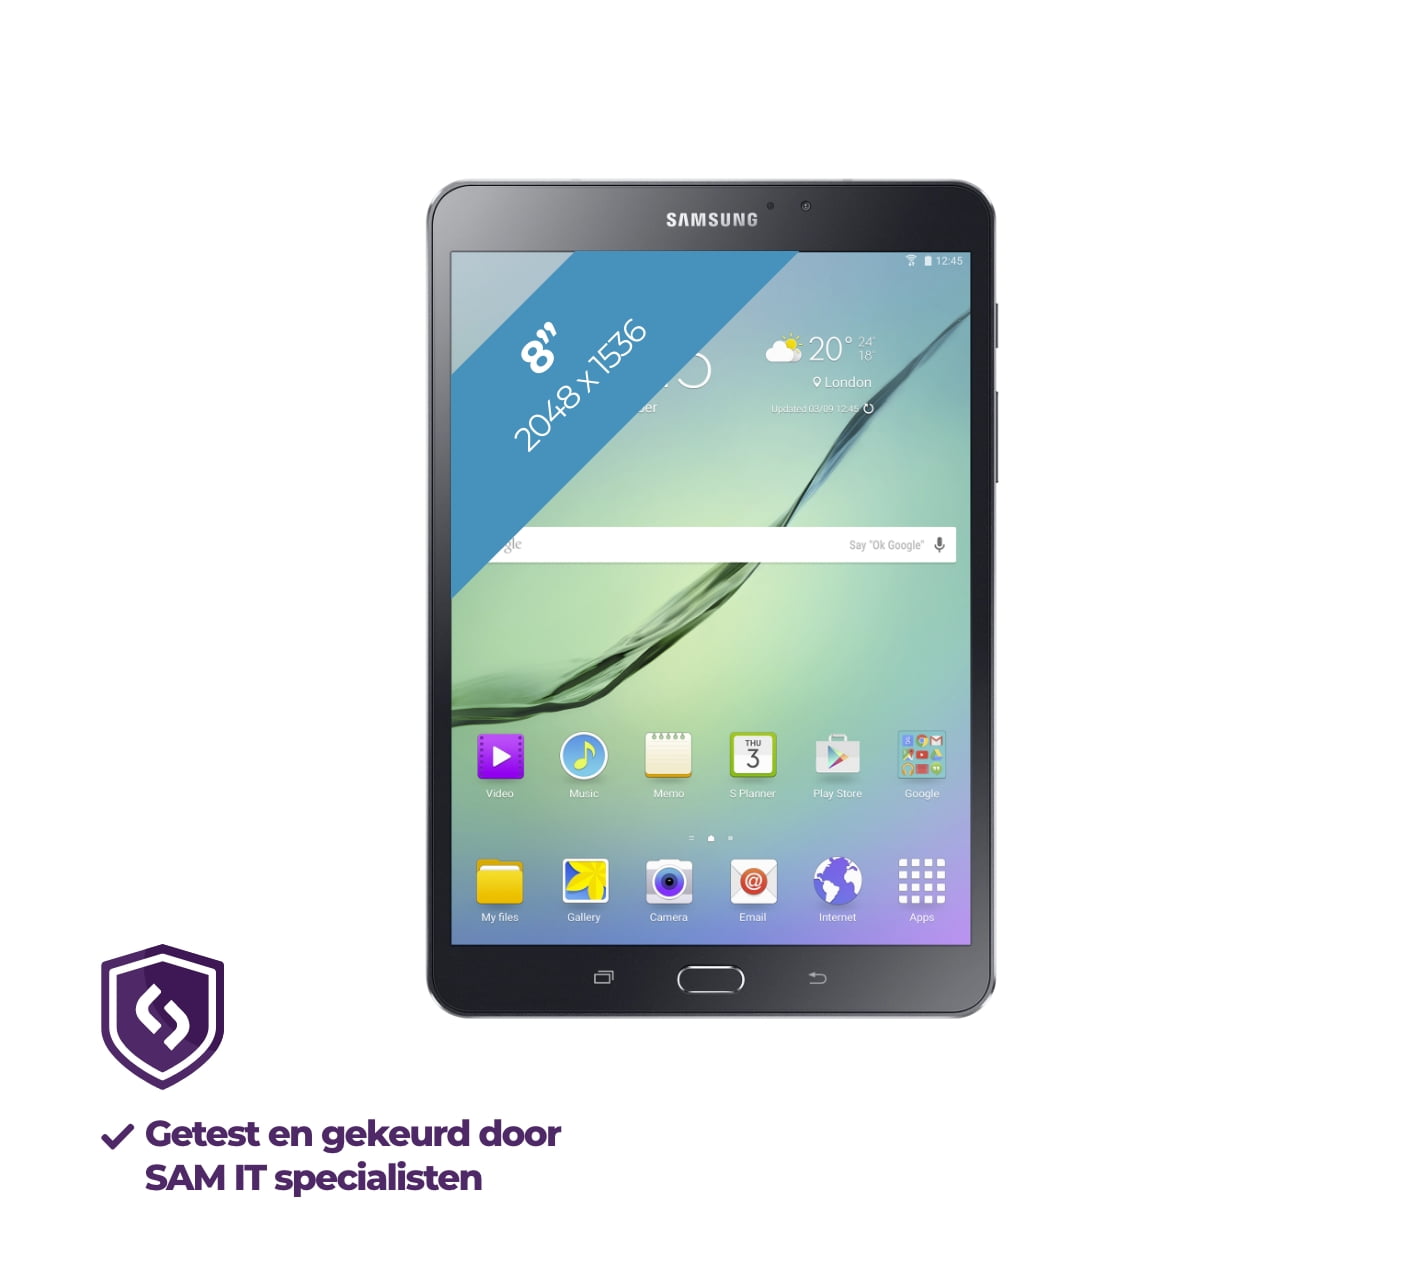 refurbished Galaxy Tab S2 8.0 32GB WiFi+Cellular Black